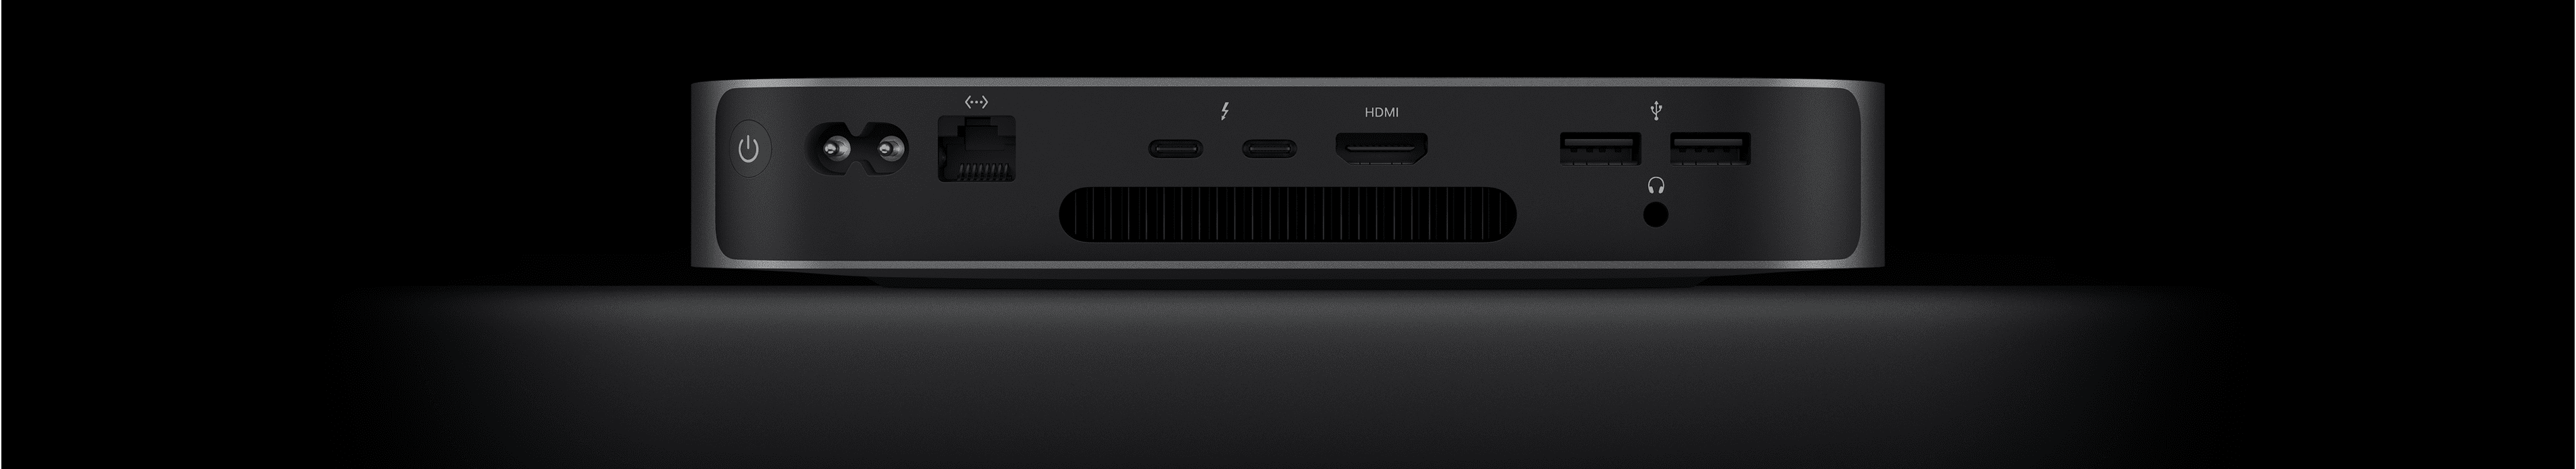 Rückansicht des Mac mini, die die zwei Thunderbolt 4 Anschlüsse, den HDMI Anschluss, zwei USB‑A Anschlüsse, den Kopfhöreranschluss, den Gigabit Ethernet Anschluss, den Netzeingang und den Ein‑/Ausschalter zeigt.